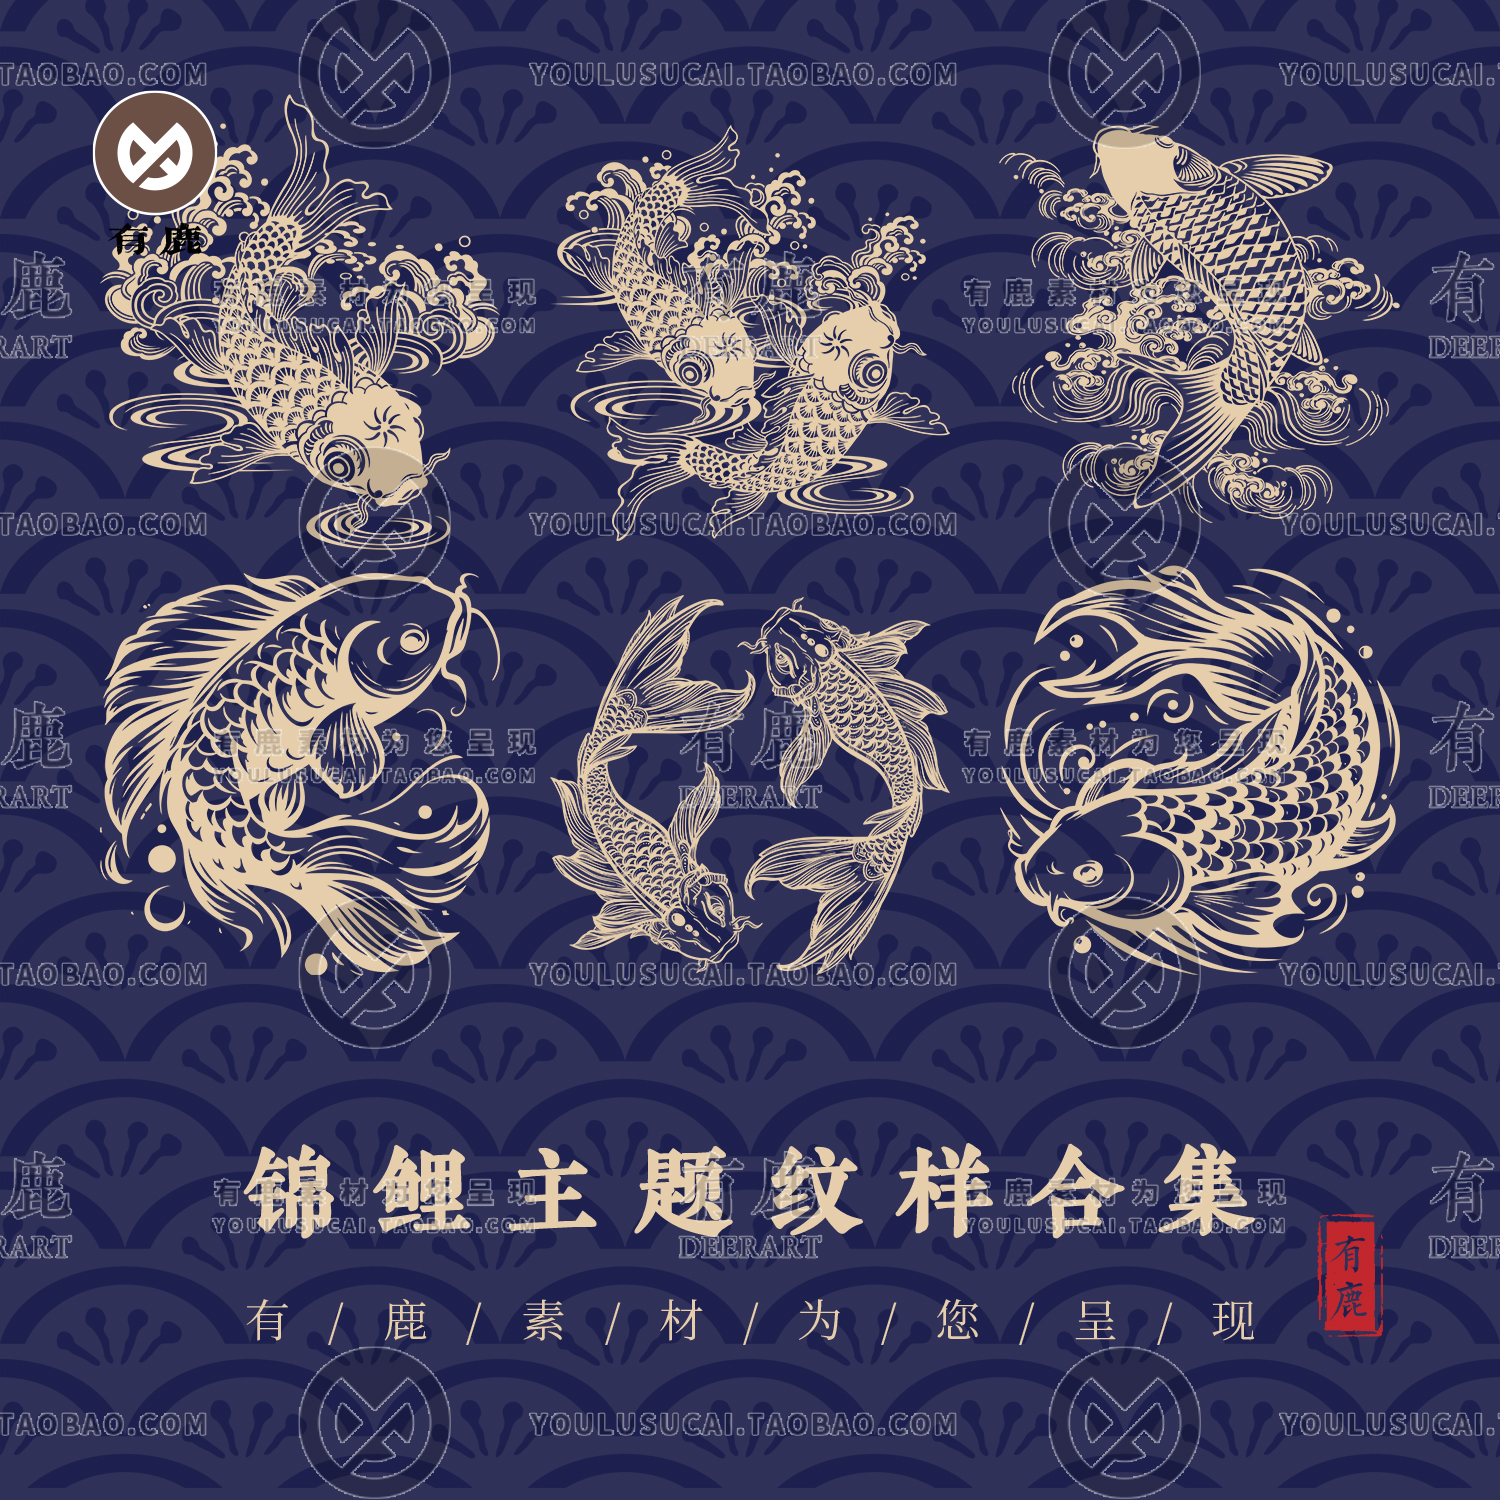 中国风中式传统纹样锦鲤手绘鲤鱼图案设计AI矢量素材PNG免扣图形